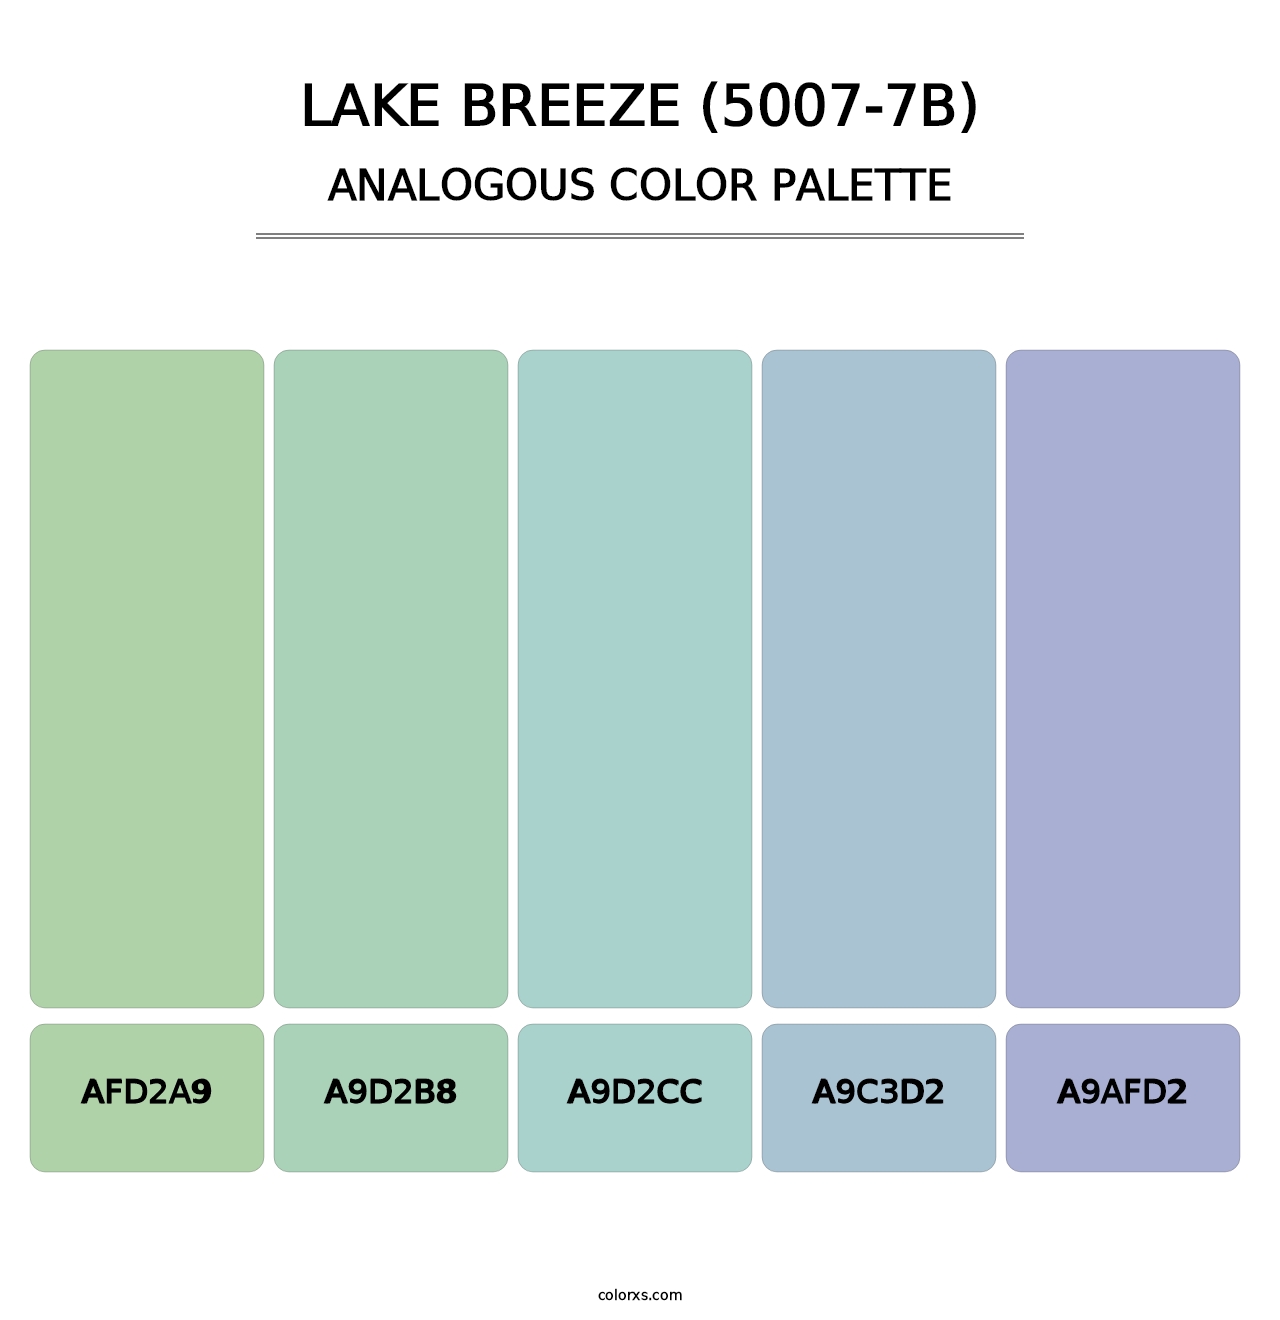 Lake Breeze (5007-7B) - Analogous Color Palette